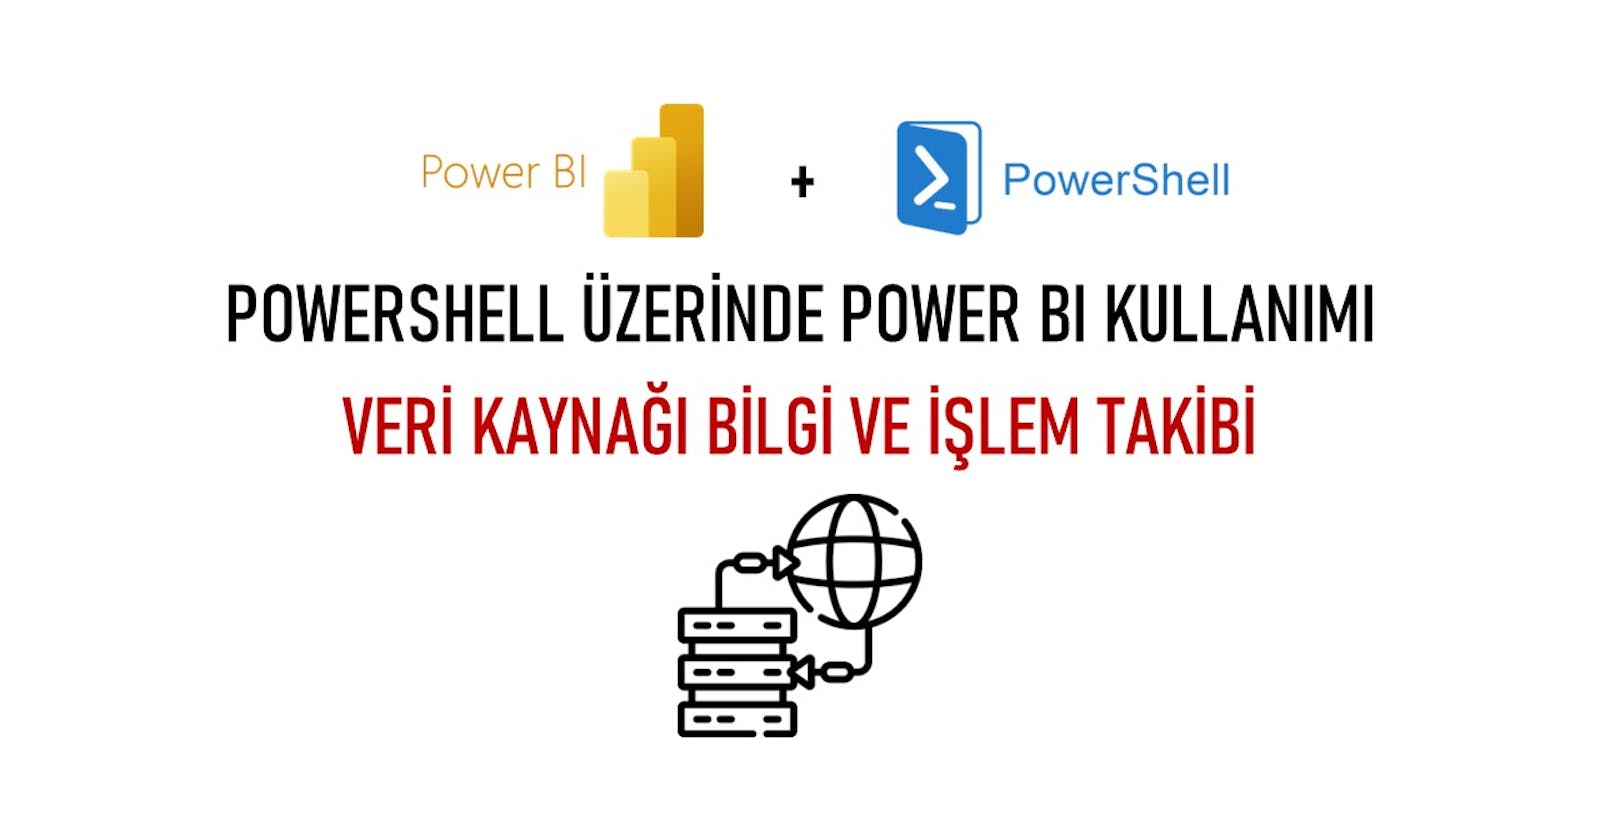 PowerShell Üzerinde Power BI Kullanımı – Kaynak Bilgi ve İşlem Takibi